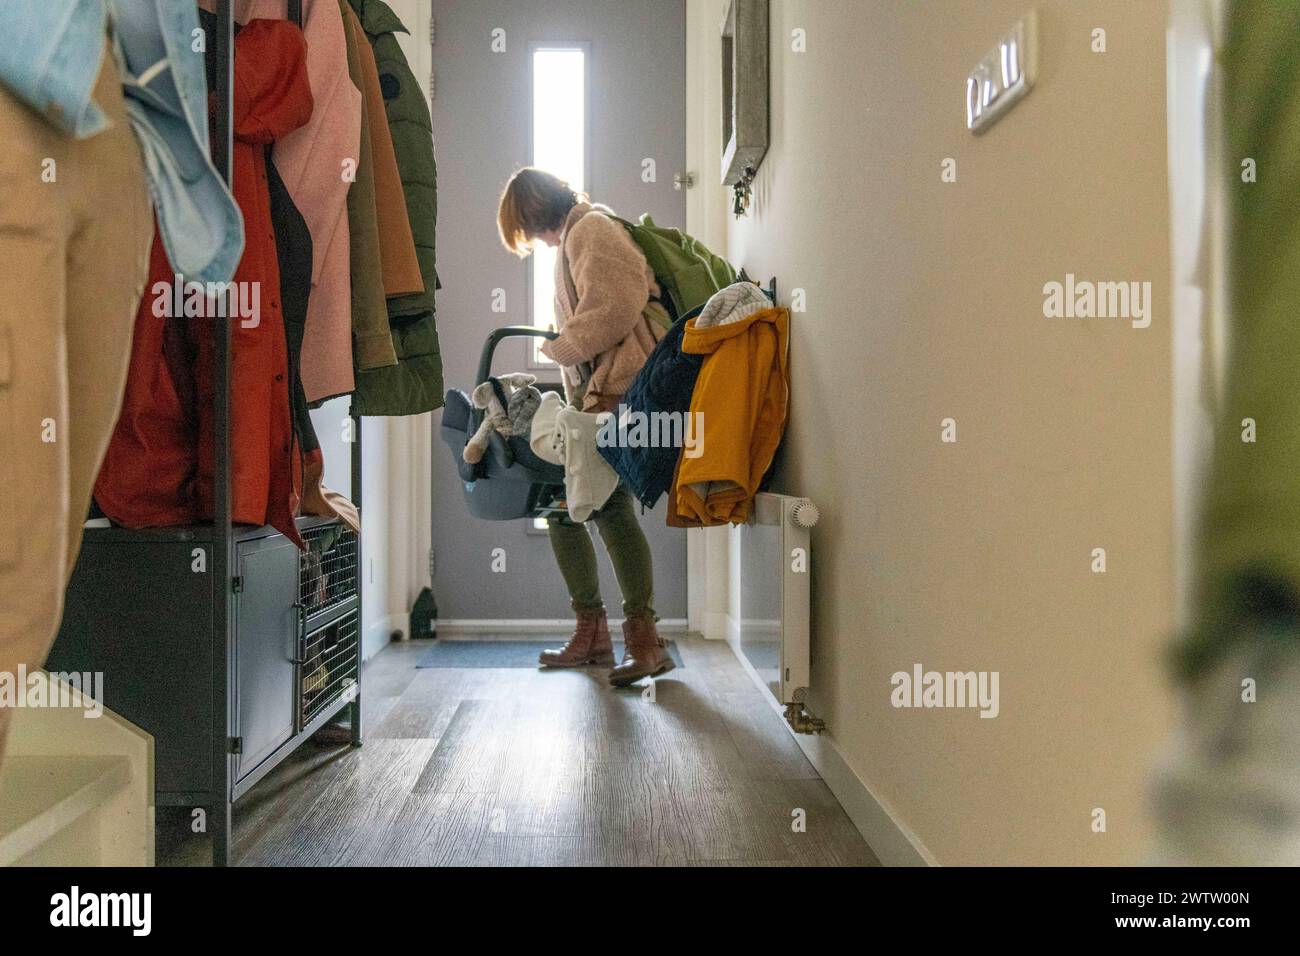 Eine Person sortiert die Wäsche in einem hellen, gemütlichen Flur, gefüllt mit Mänteln, die an Haken hängen. Stockfoto